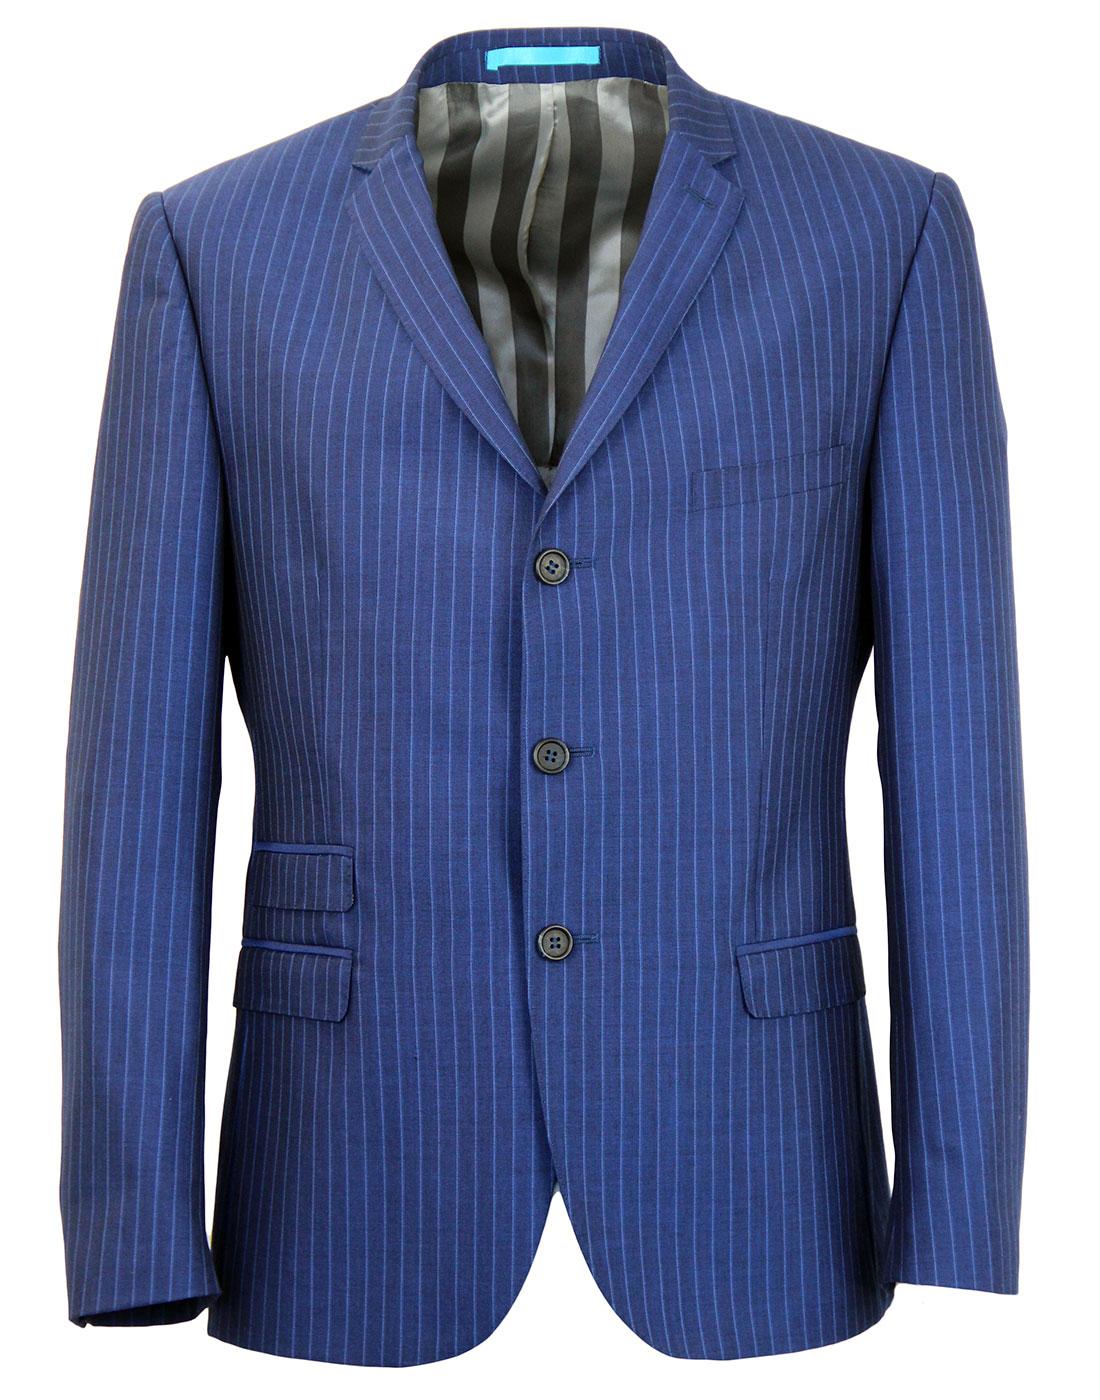 MADCAP ENGLAND 60s Mod 3 Button Royal Blue Pinstripe Suit Jacket